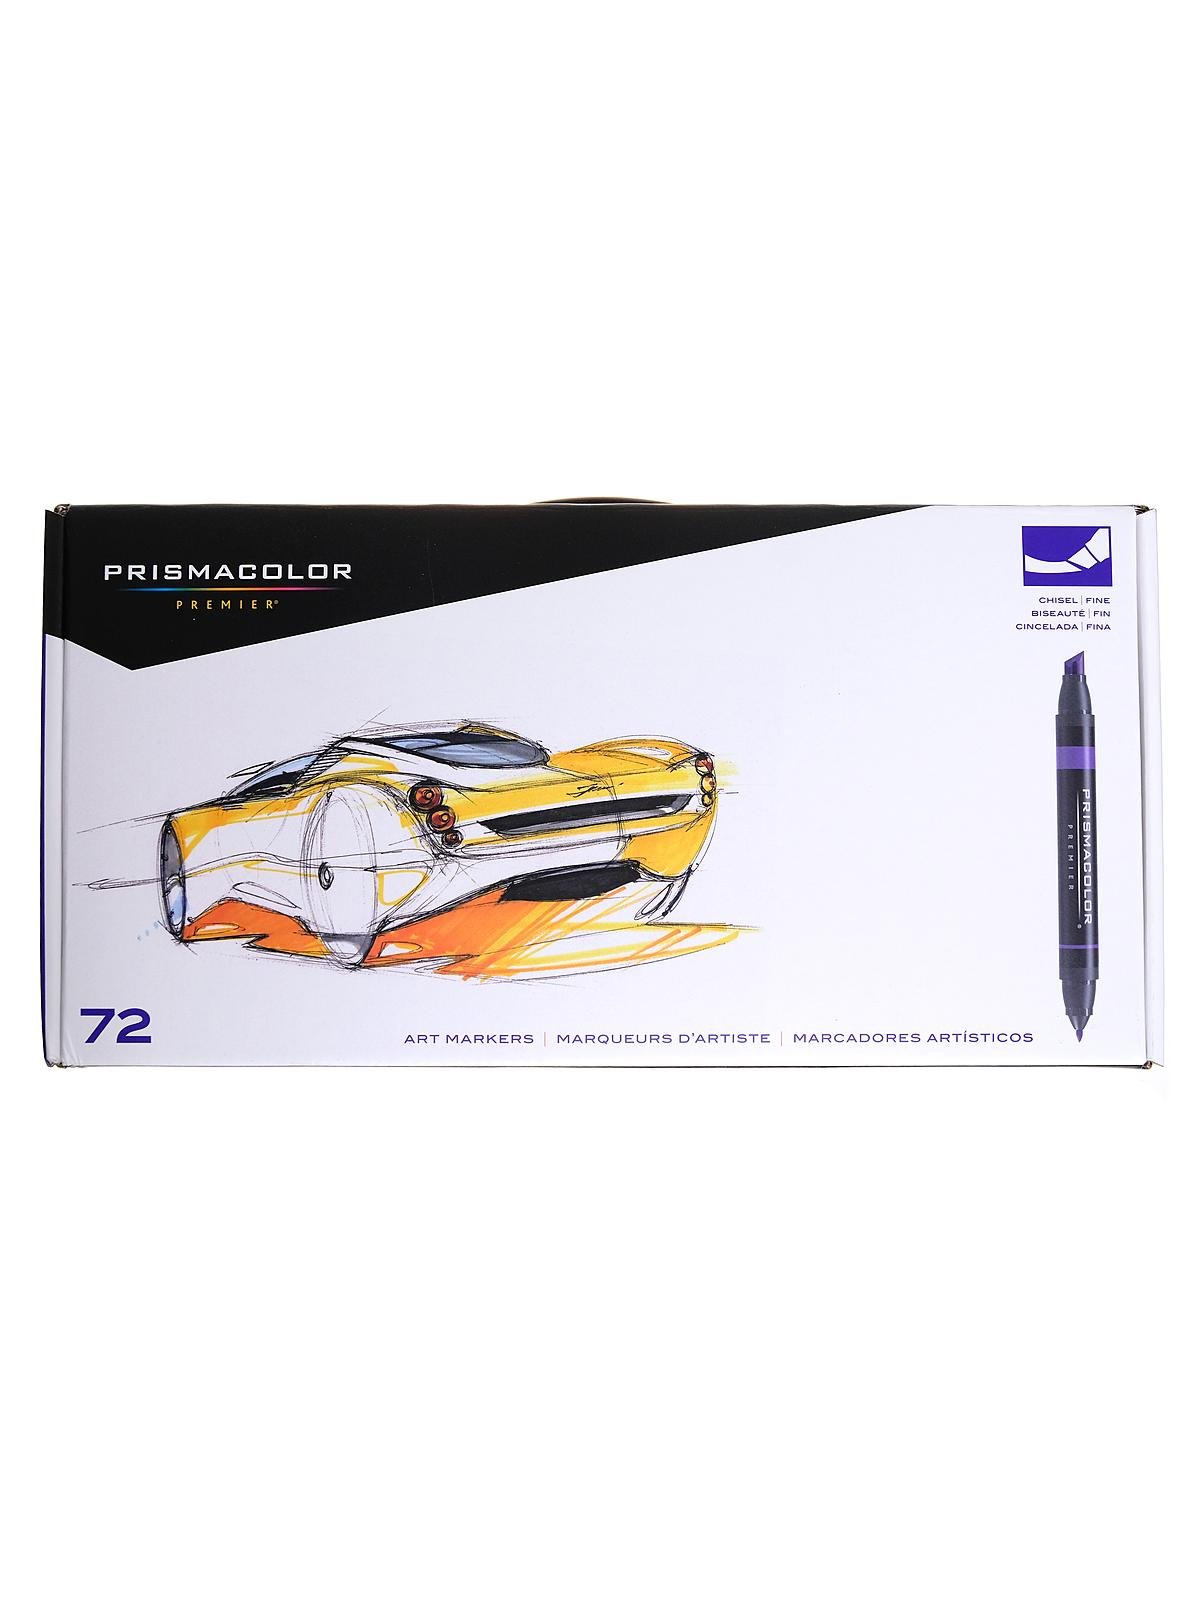 Prismacolor Premier Chisel/Fine Tip Art Markers 156 Marker Set (3746)